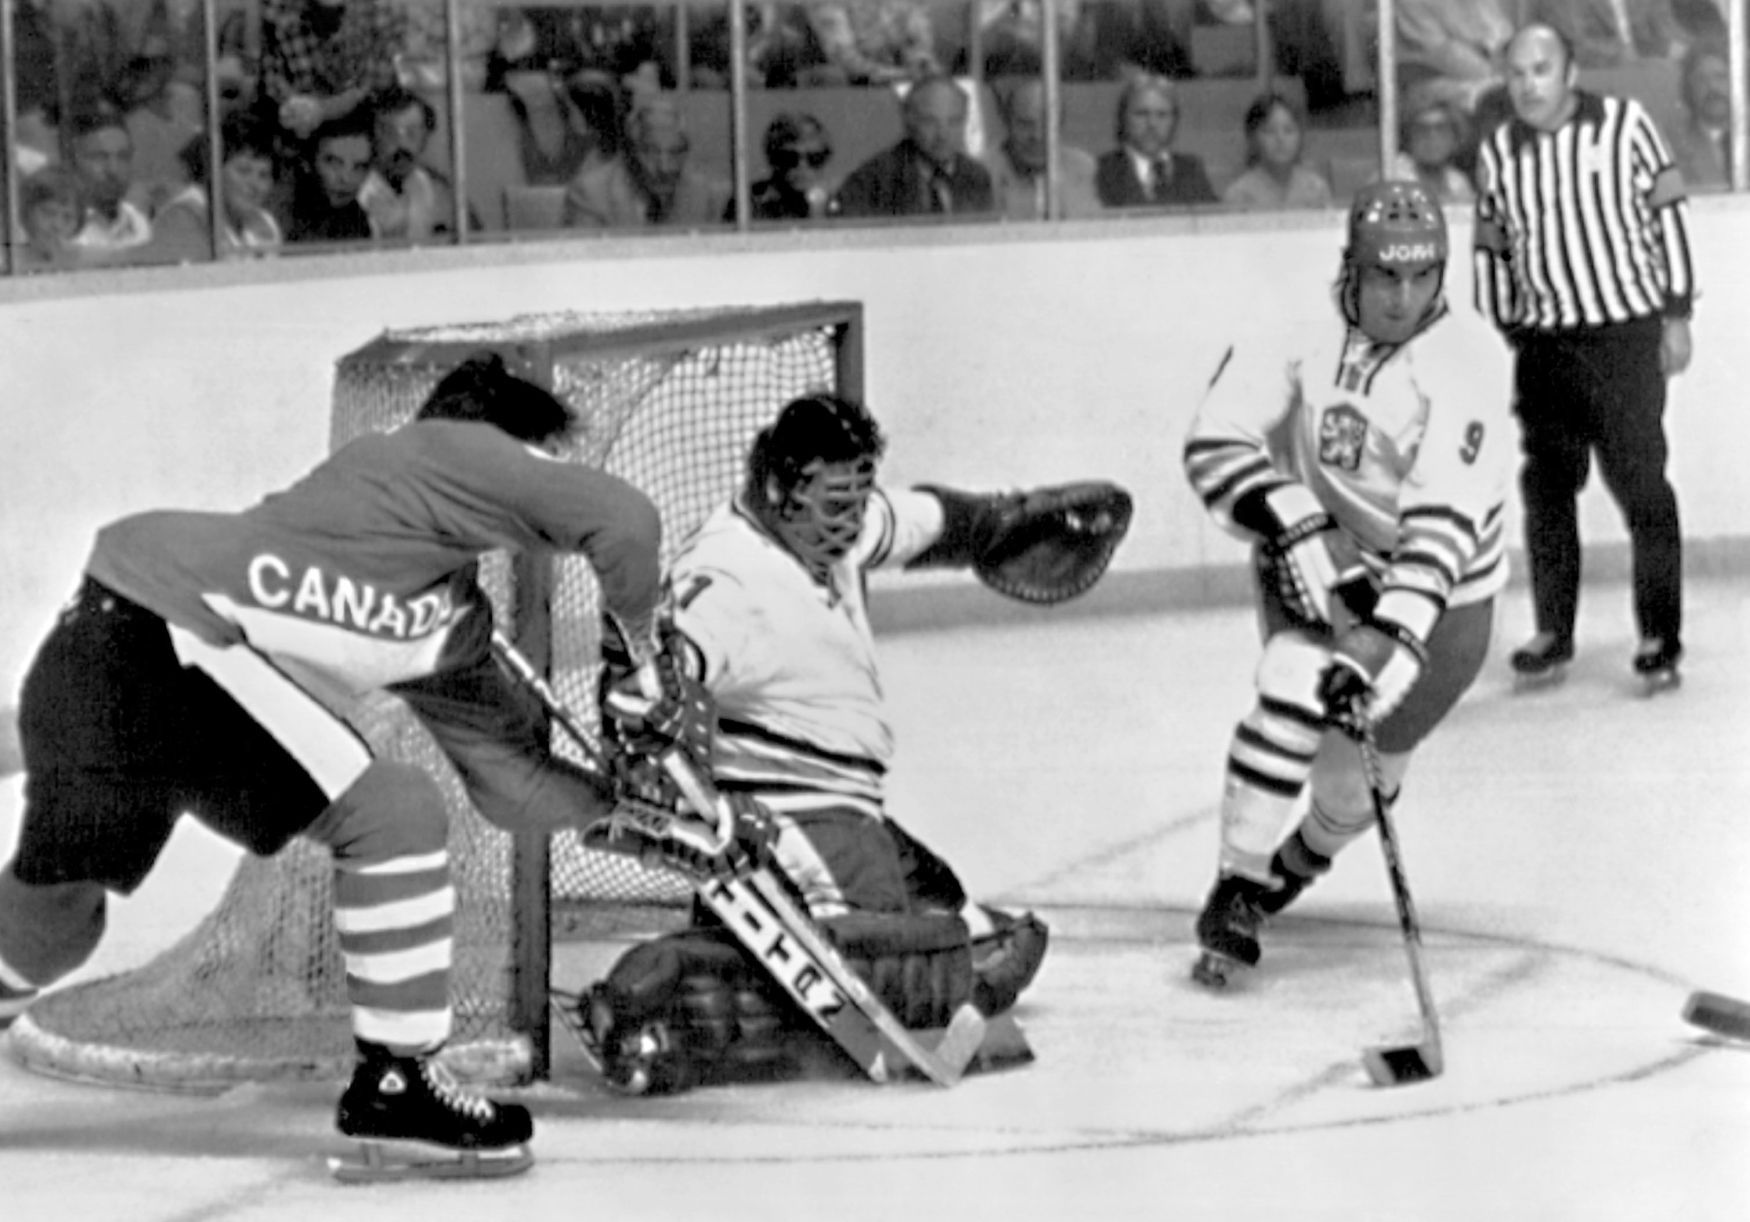 Kanadský pohár 1976, Československo-Kanada: Vladimír Dzurilla, Miroslav Dvořák (9) - Reggie Leach